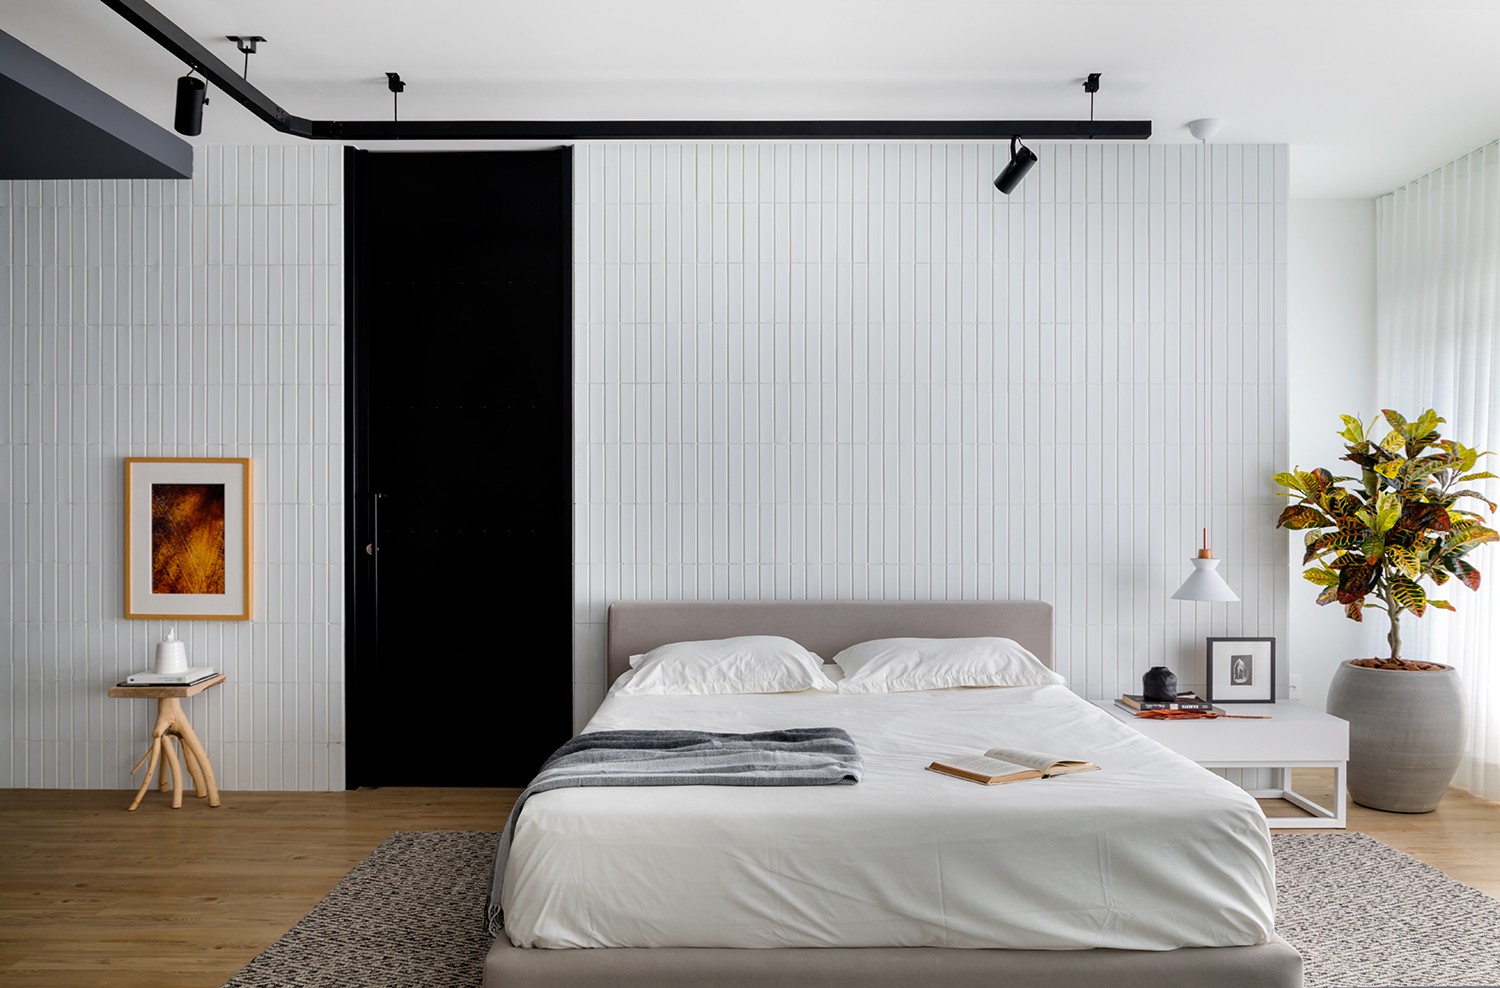 Décor do dia: quarto com cama baixa e estilo minimalista (Foto: Fabio Júnior Severo)